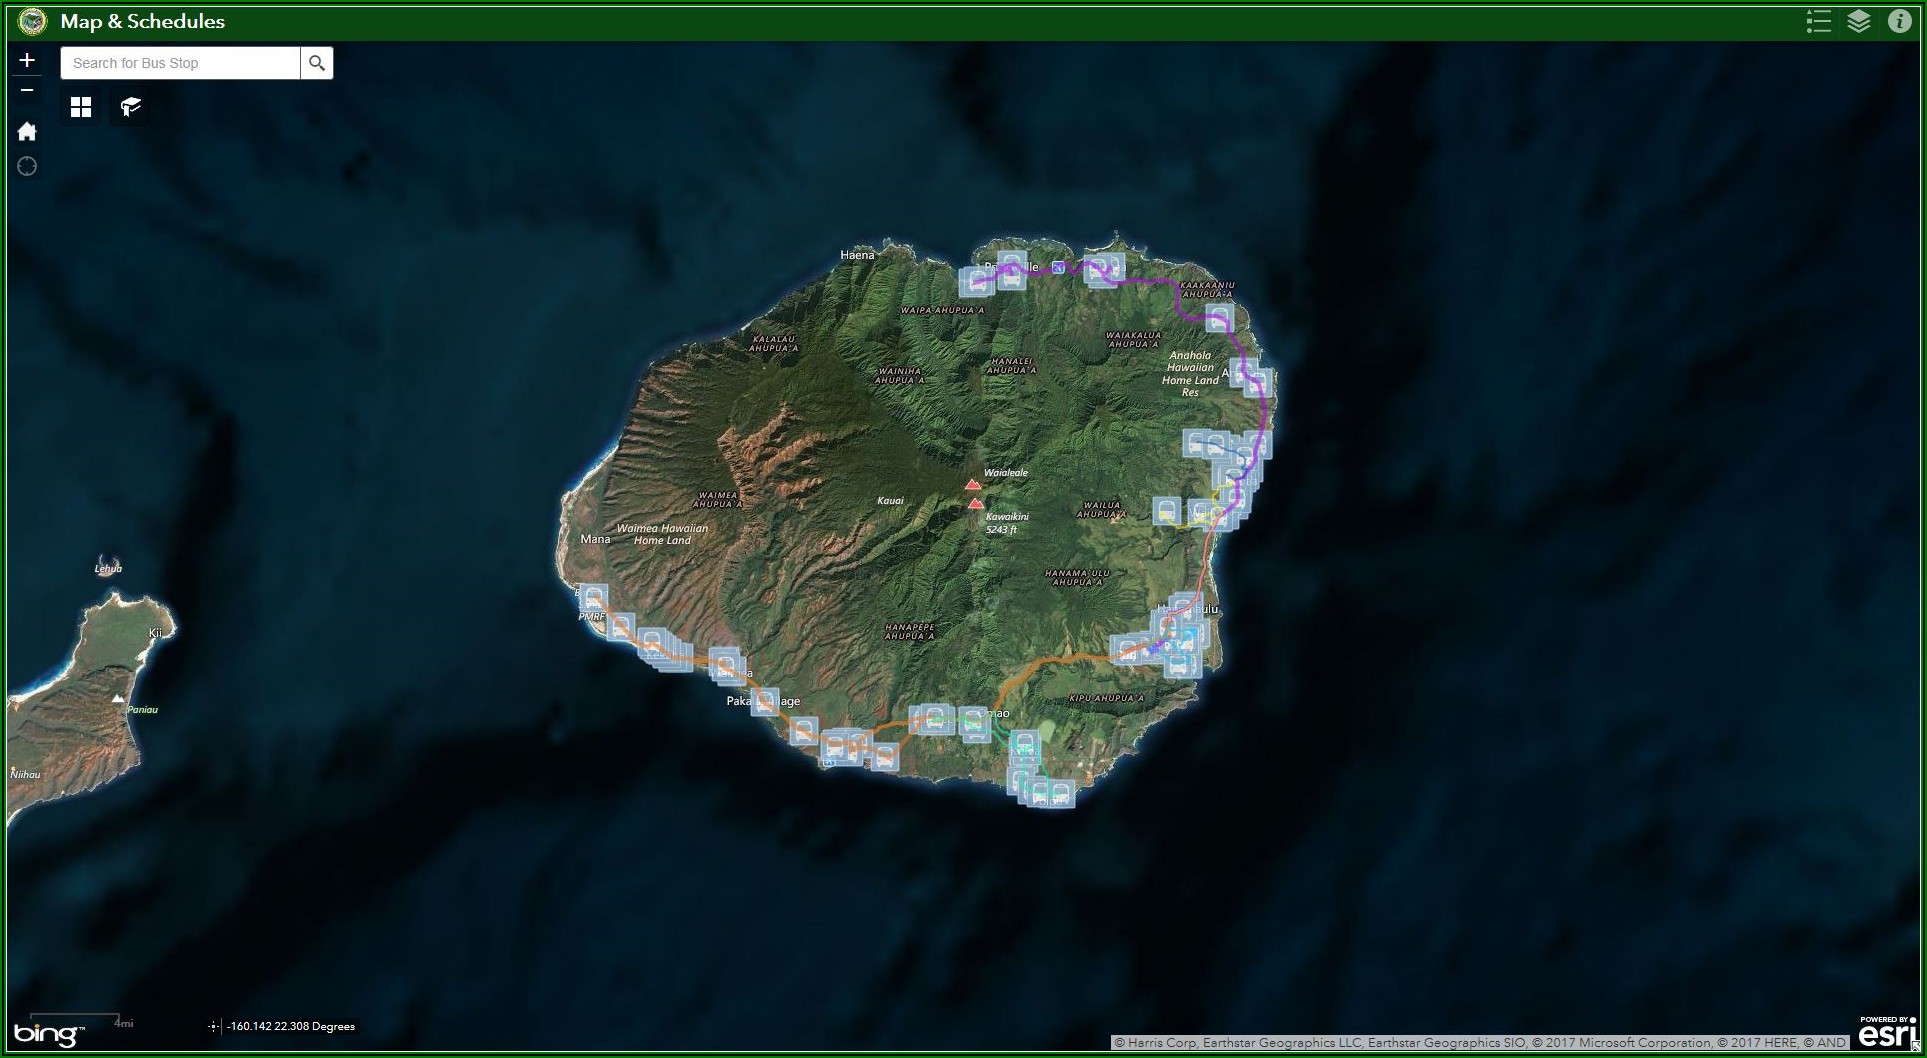 Road Map Of Kauai Pdf